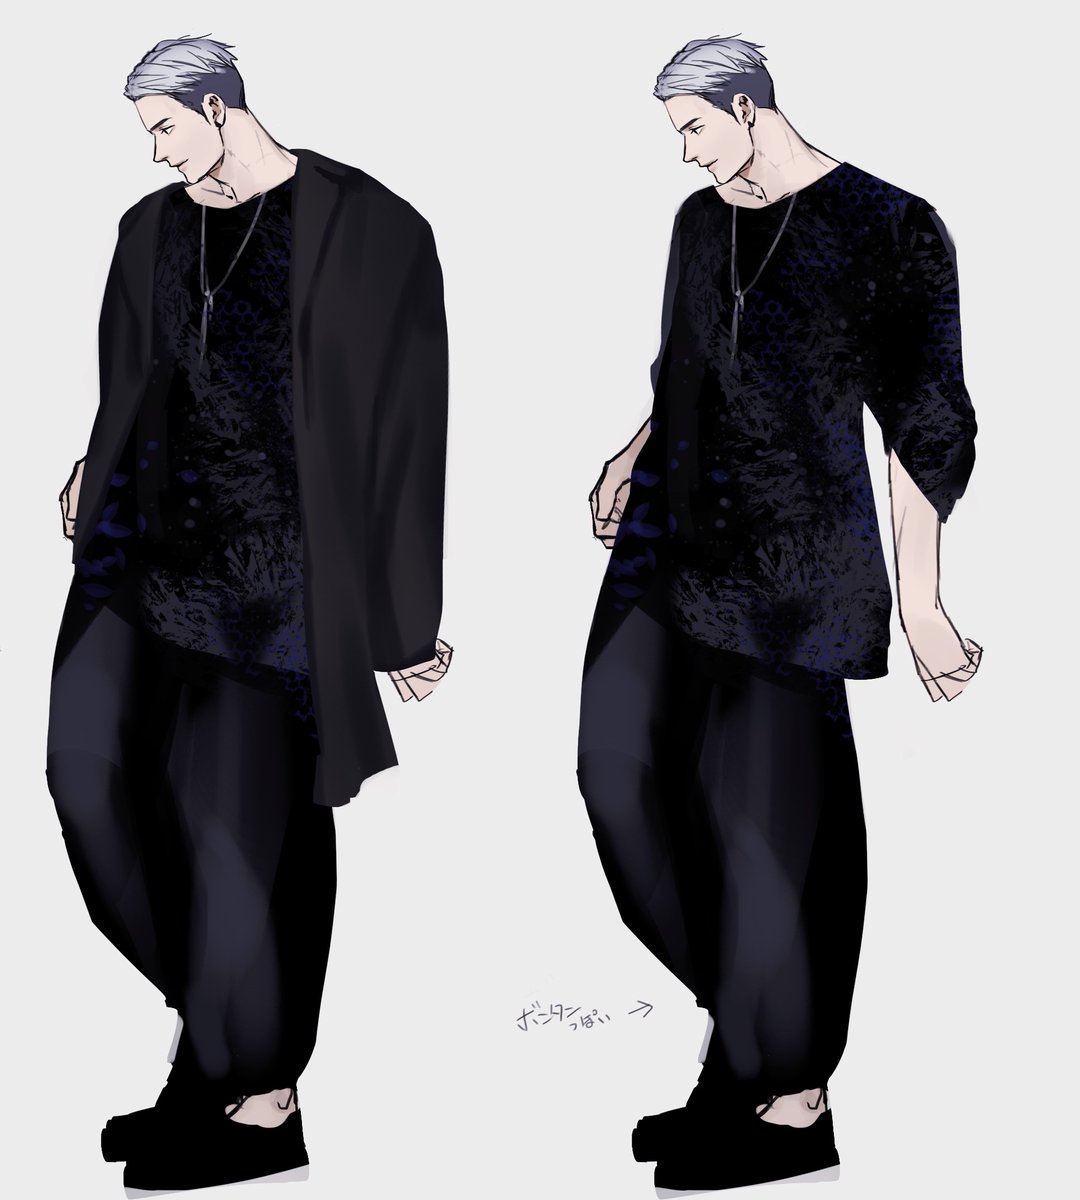 「お洋服案 全体的にモノクロ仕様でした。 」|柴寅(Shibatora)TLコミックス発売中のイラスト